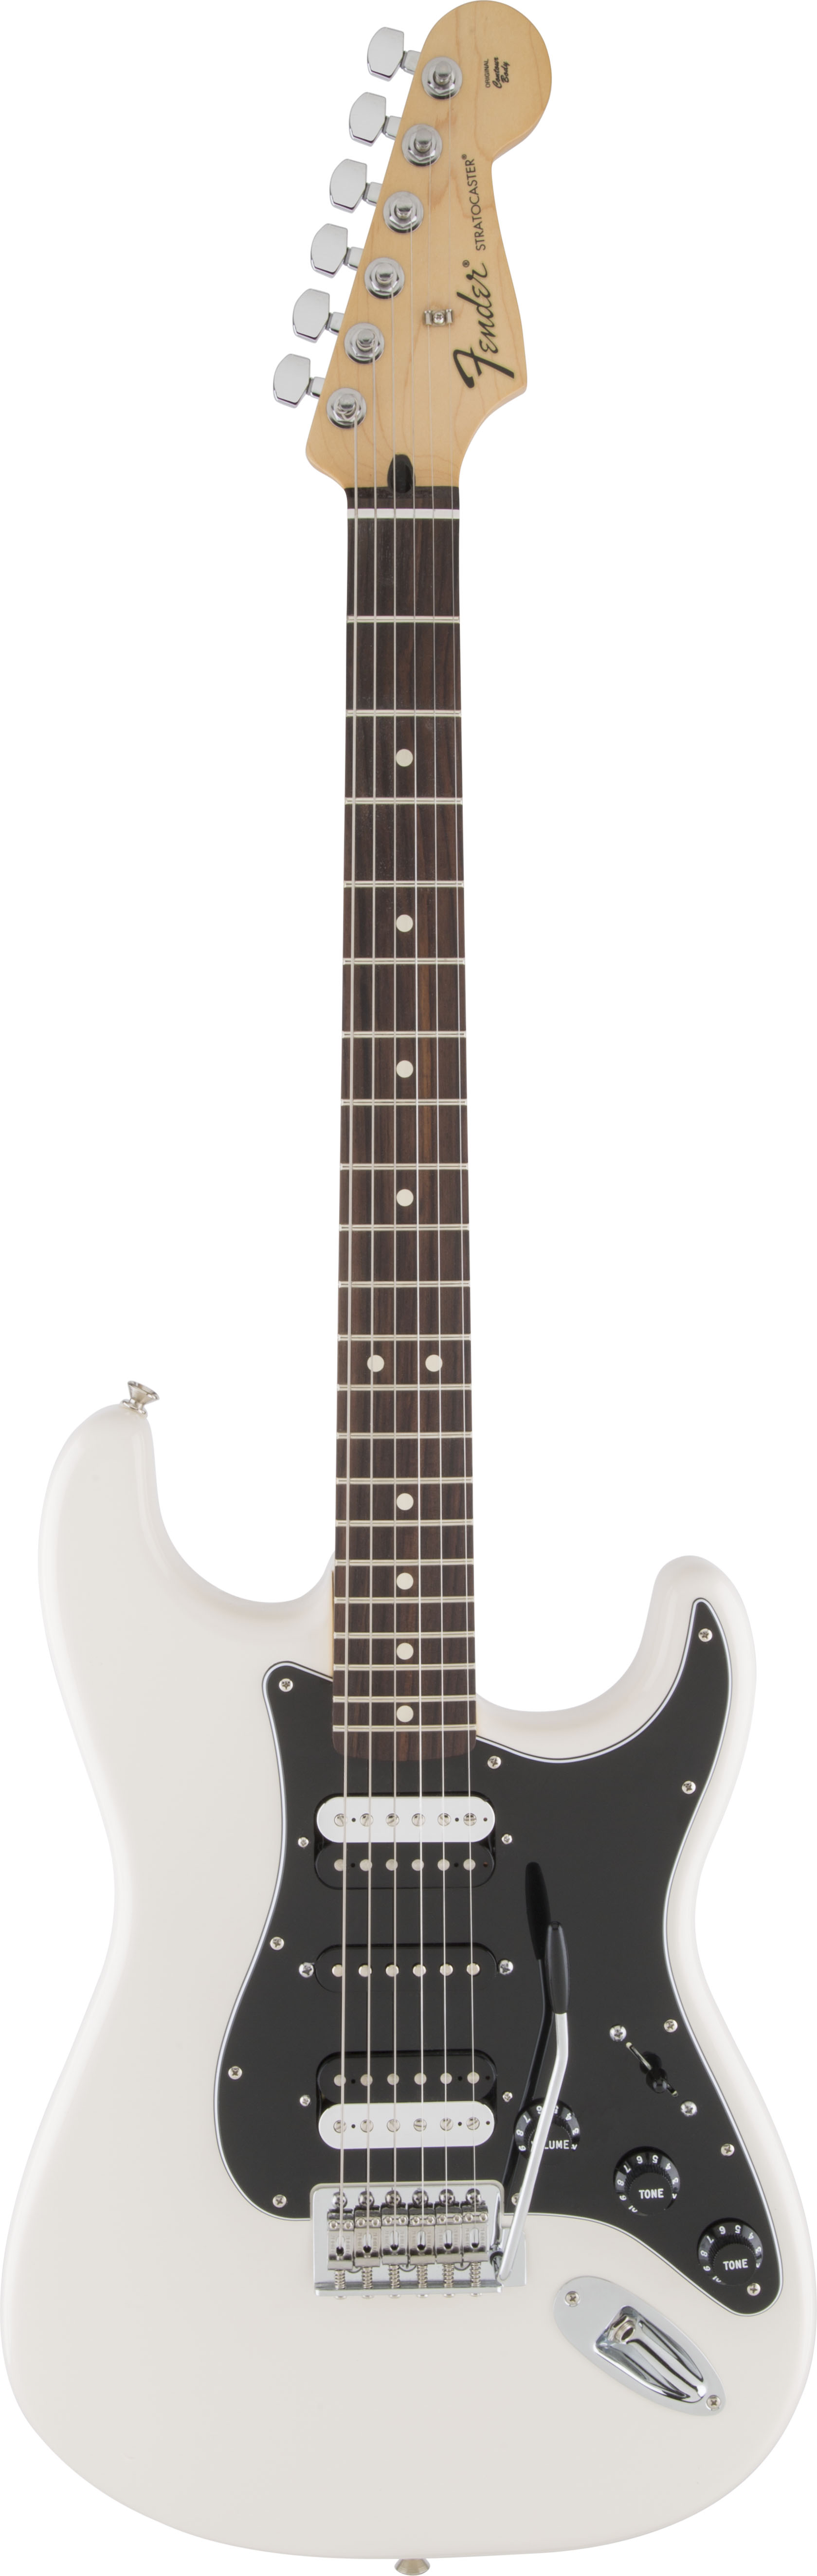 Fender-Standard-Stratocaster-HSH